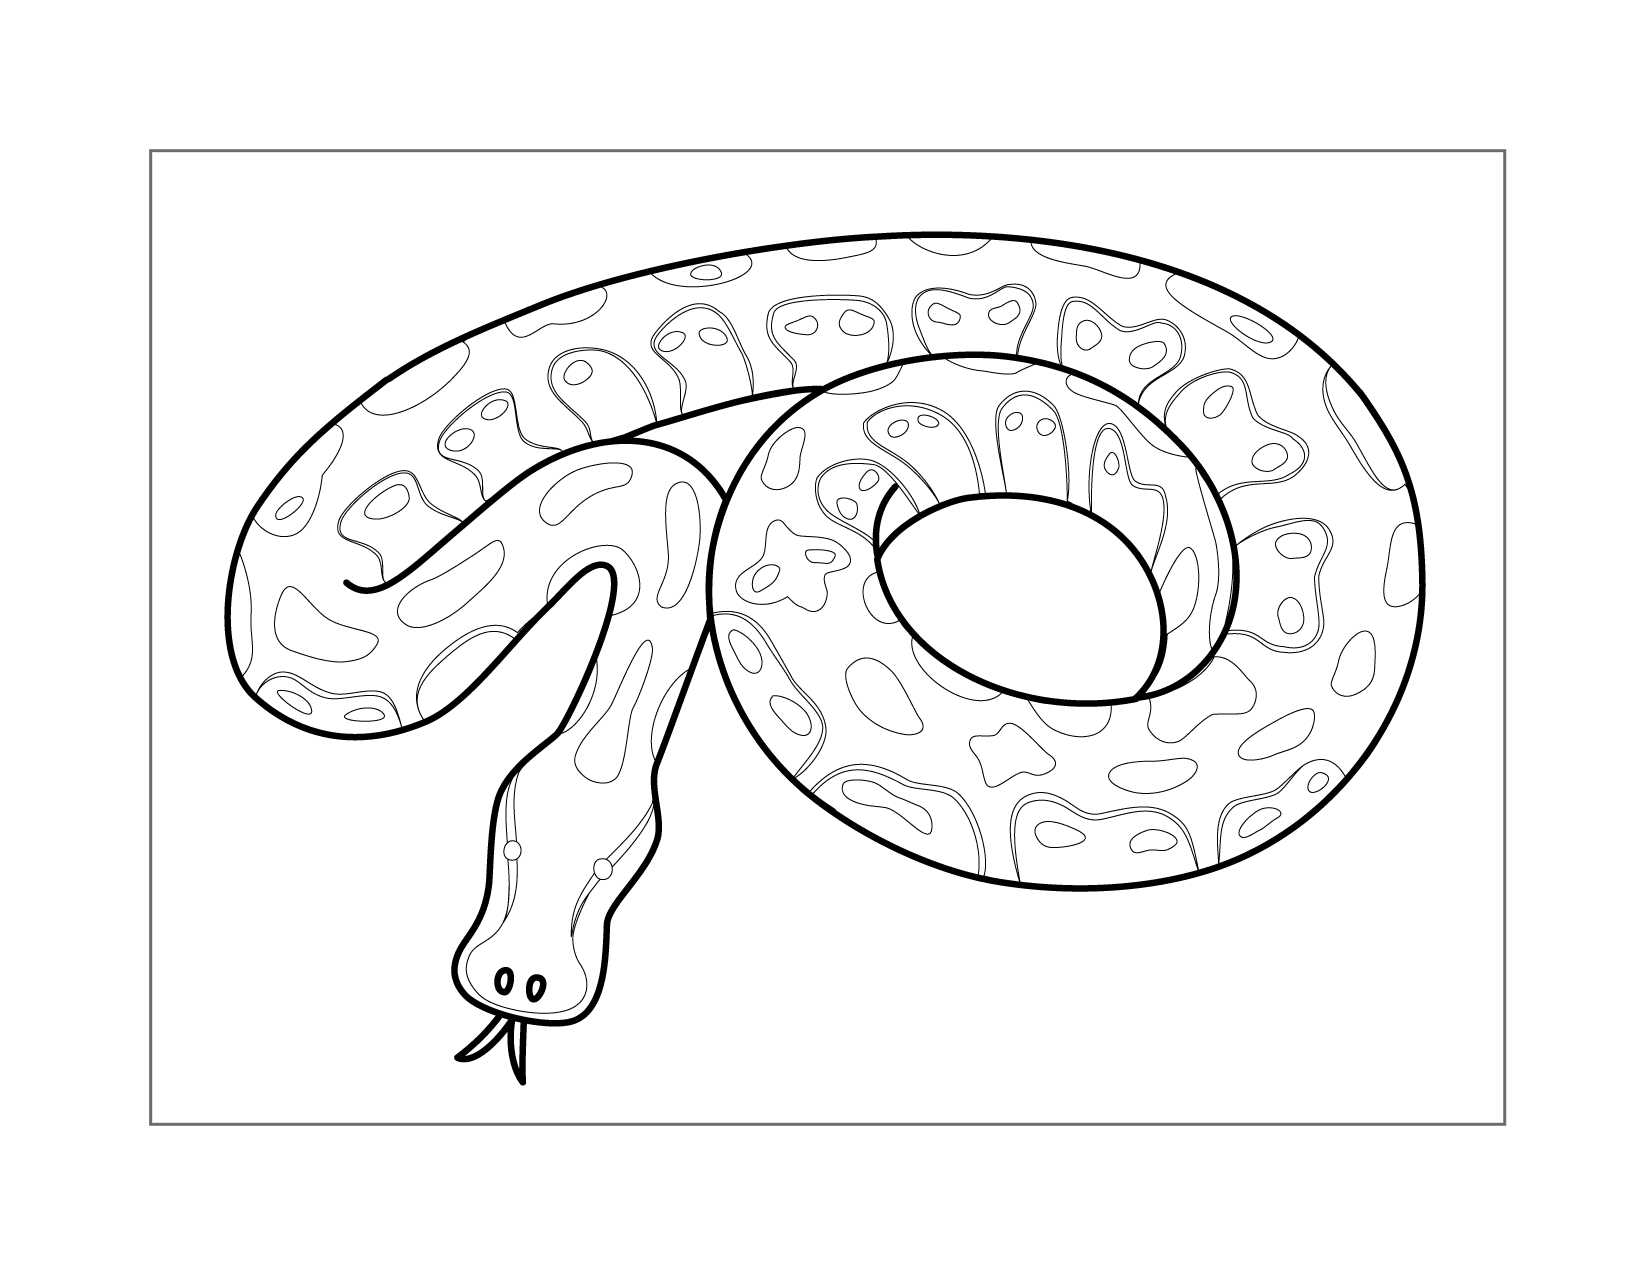 Ball Python Snake Coloring Page